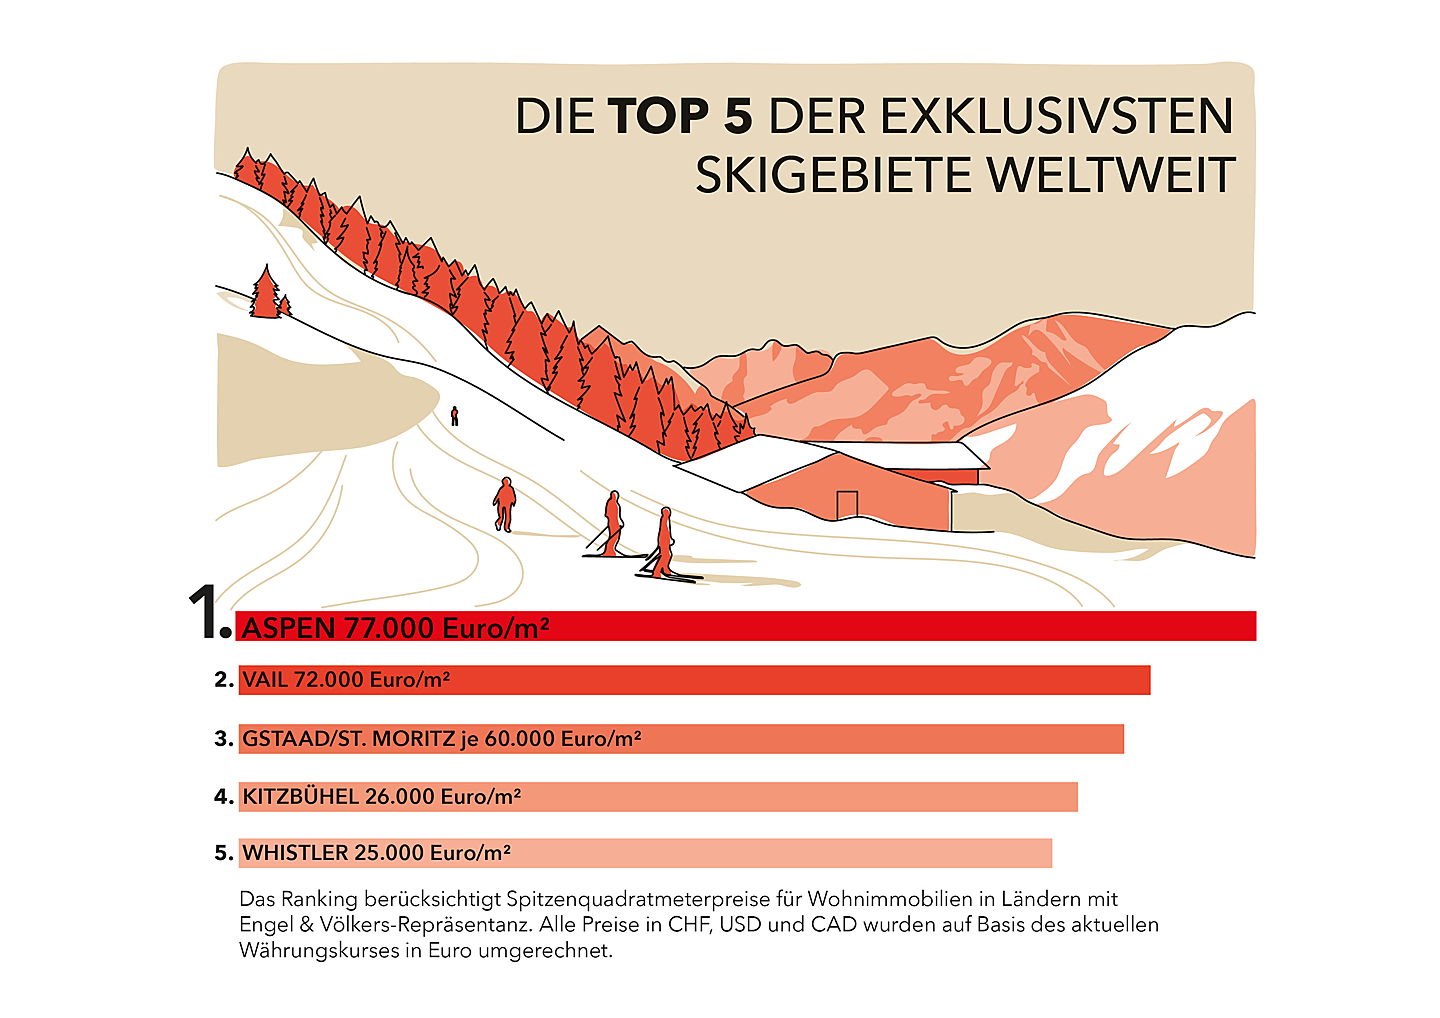  Thalwil - Schweiz
- Engel & Völkers Ski-Ranking 2022/23: Die Top 5 der exklusivsten Skigebiete weltweit.
(Bildquelle: Engel & Völkers)